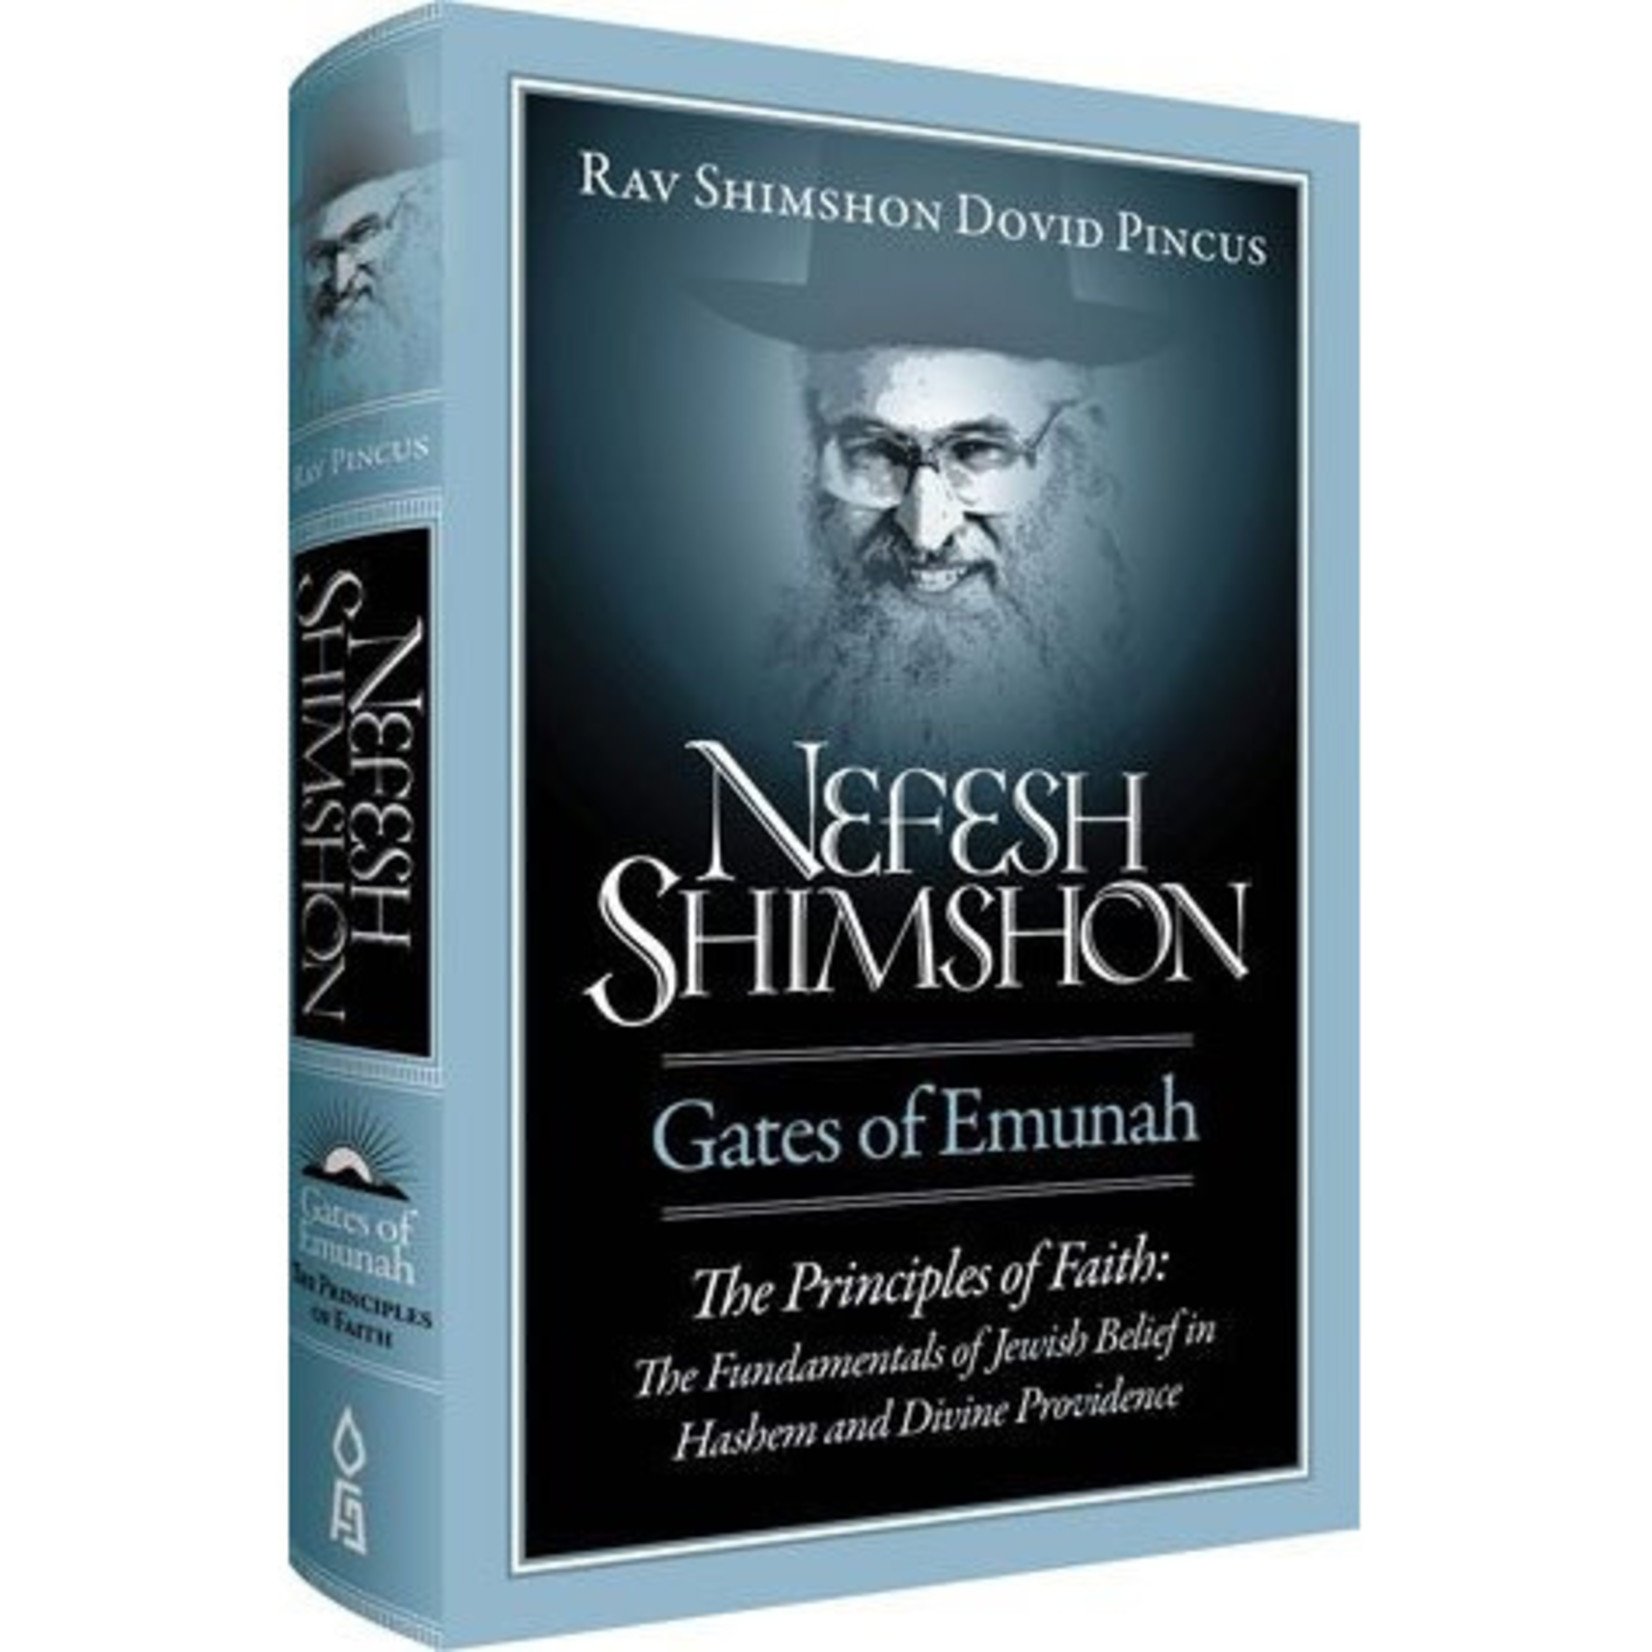 Nefesh Shimshon: Gates of Emunah - Principles of Faith